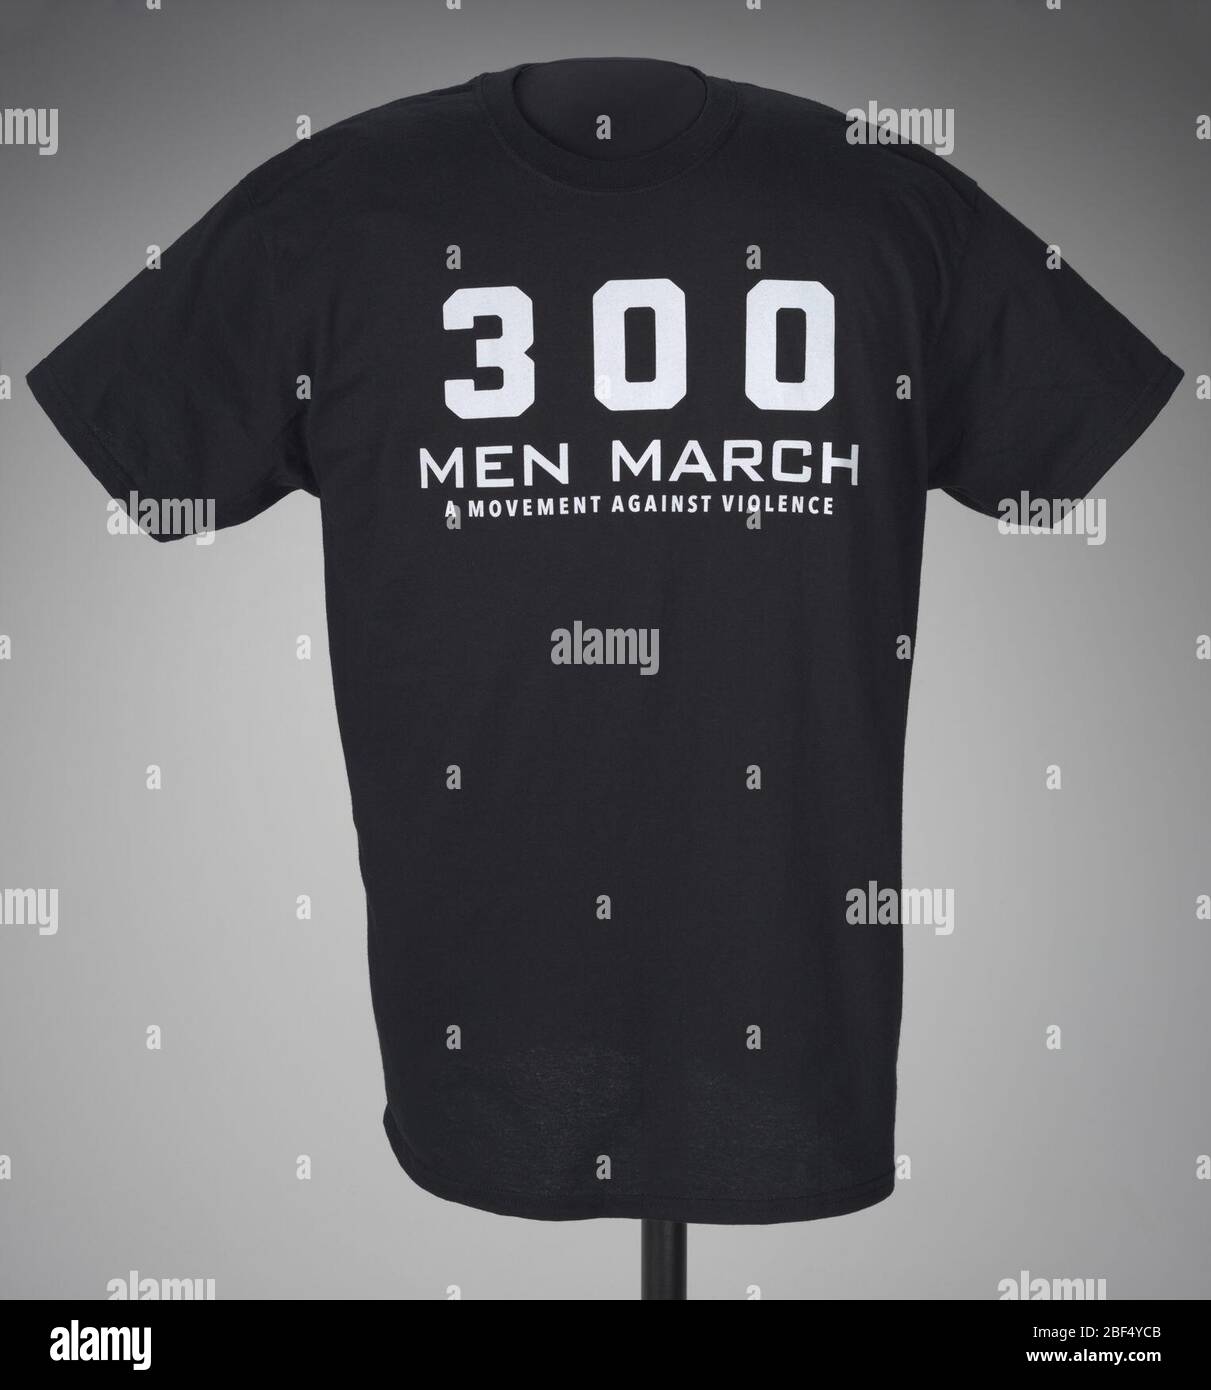 Empírico Escabullirse no relacionado Camiseta negra para 300 hombres Marzo usada en un rally después de la  muerte de Freddie Gray. Una camiseta negra con letras blancas en la parte  delantera. El texto de la camisa